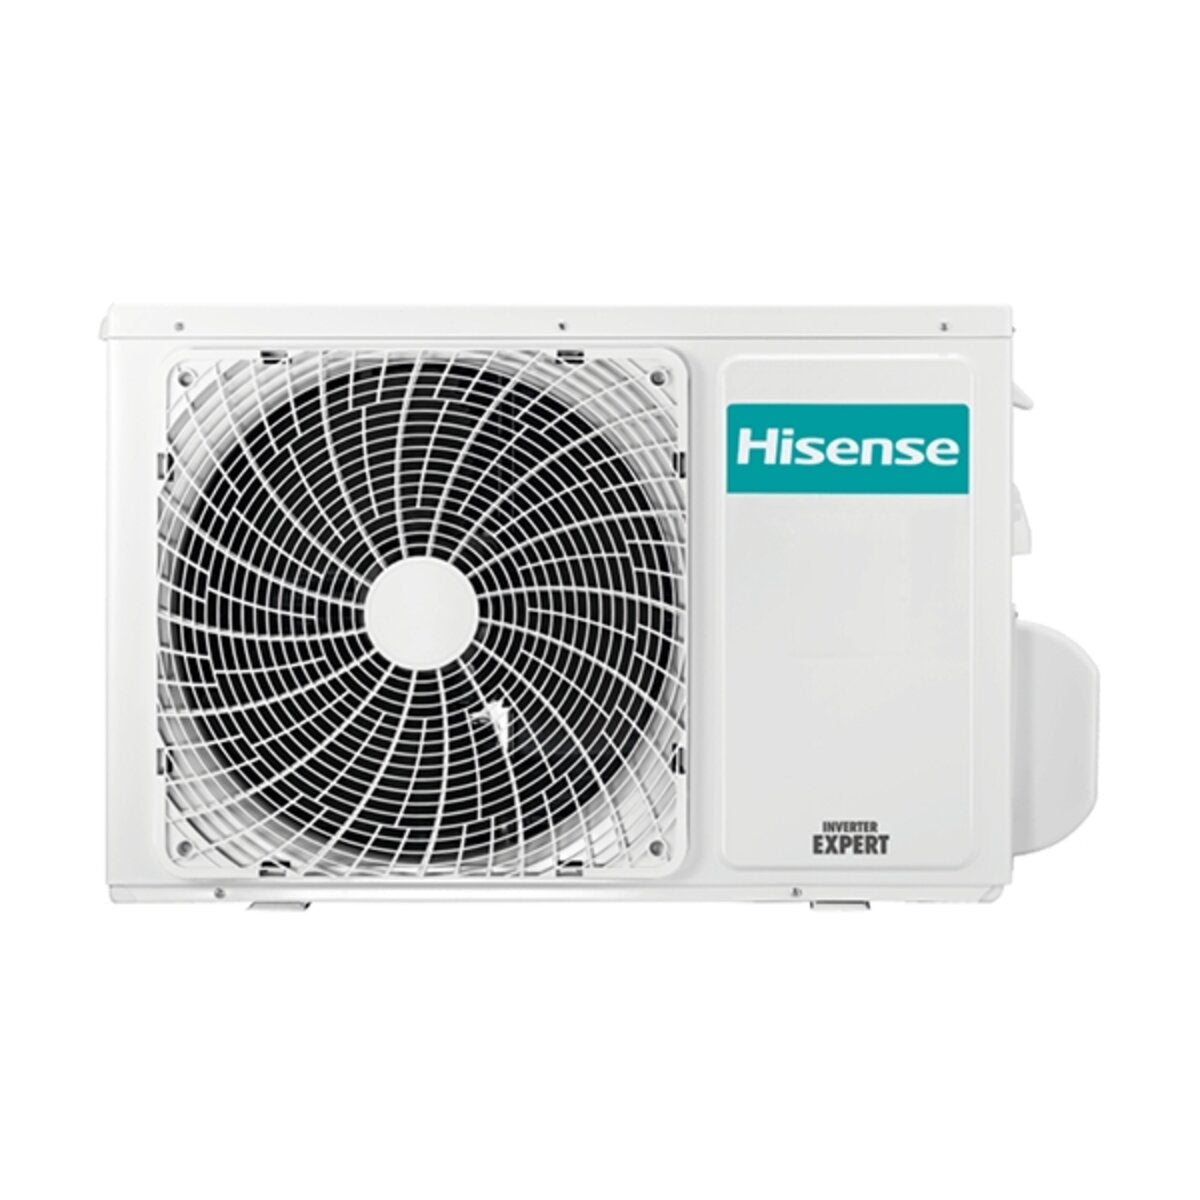 Hisense Hi-Comfort climatiseur double split 9000+12000 BTU onduleur A++ wifi unité extérieure 4.1 kW